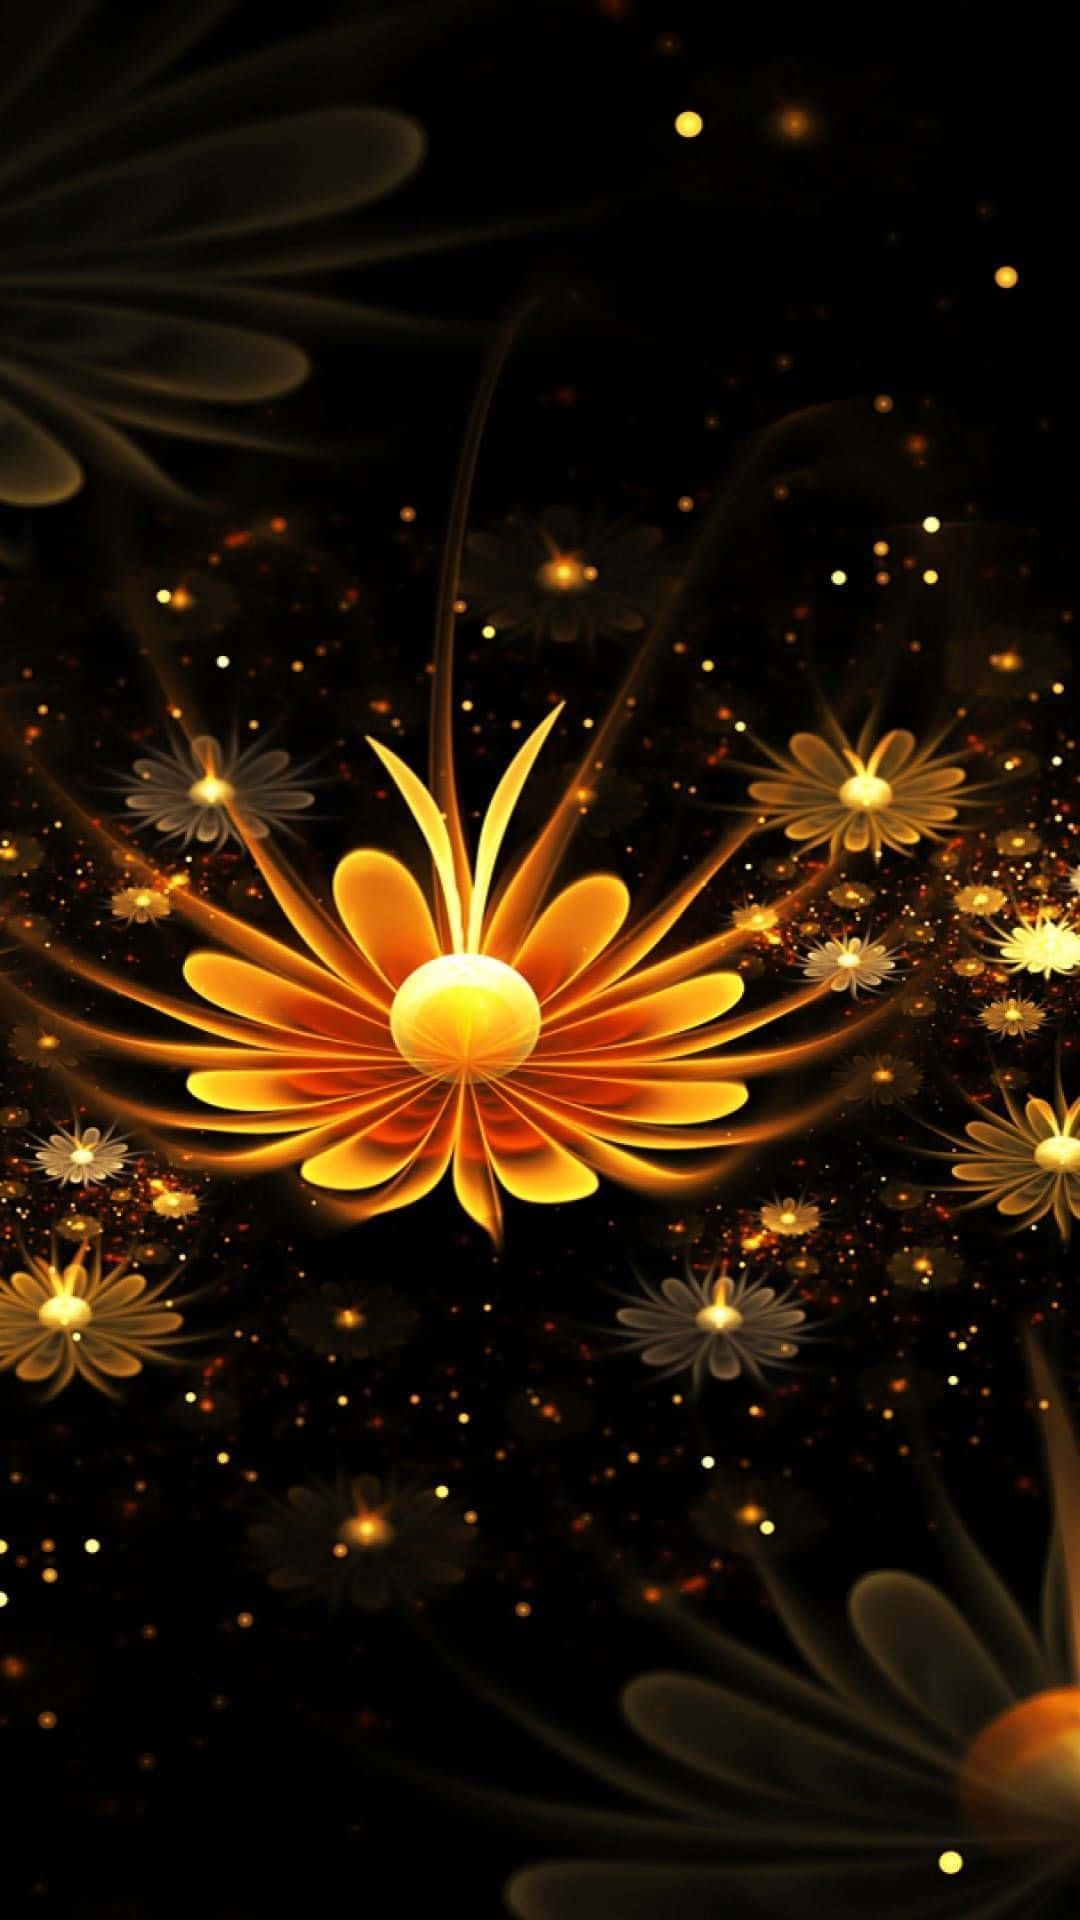 Unaflor 3d Vibrante En Plena Floración. Fondo de pantalla